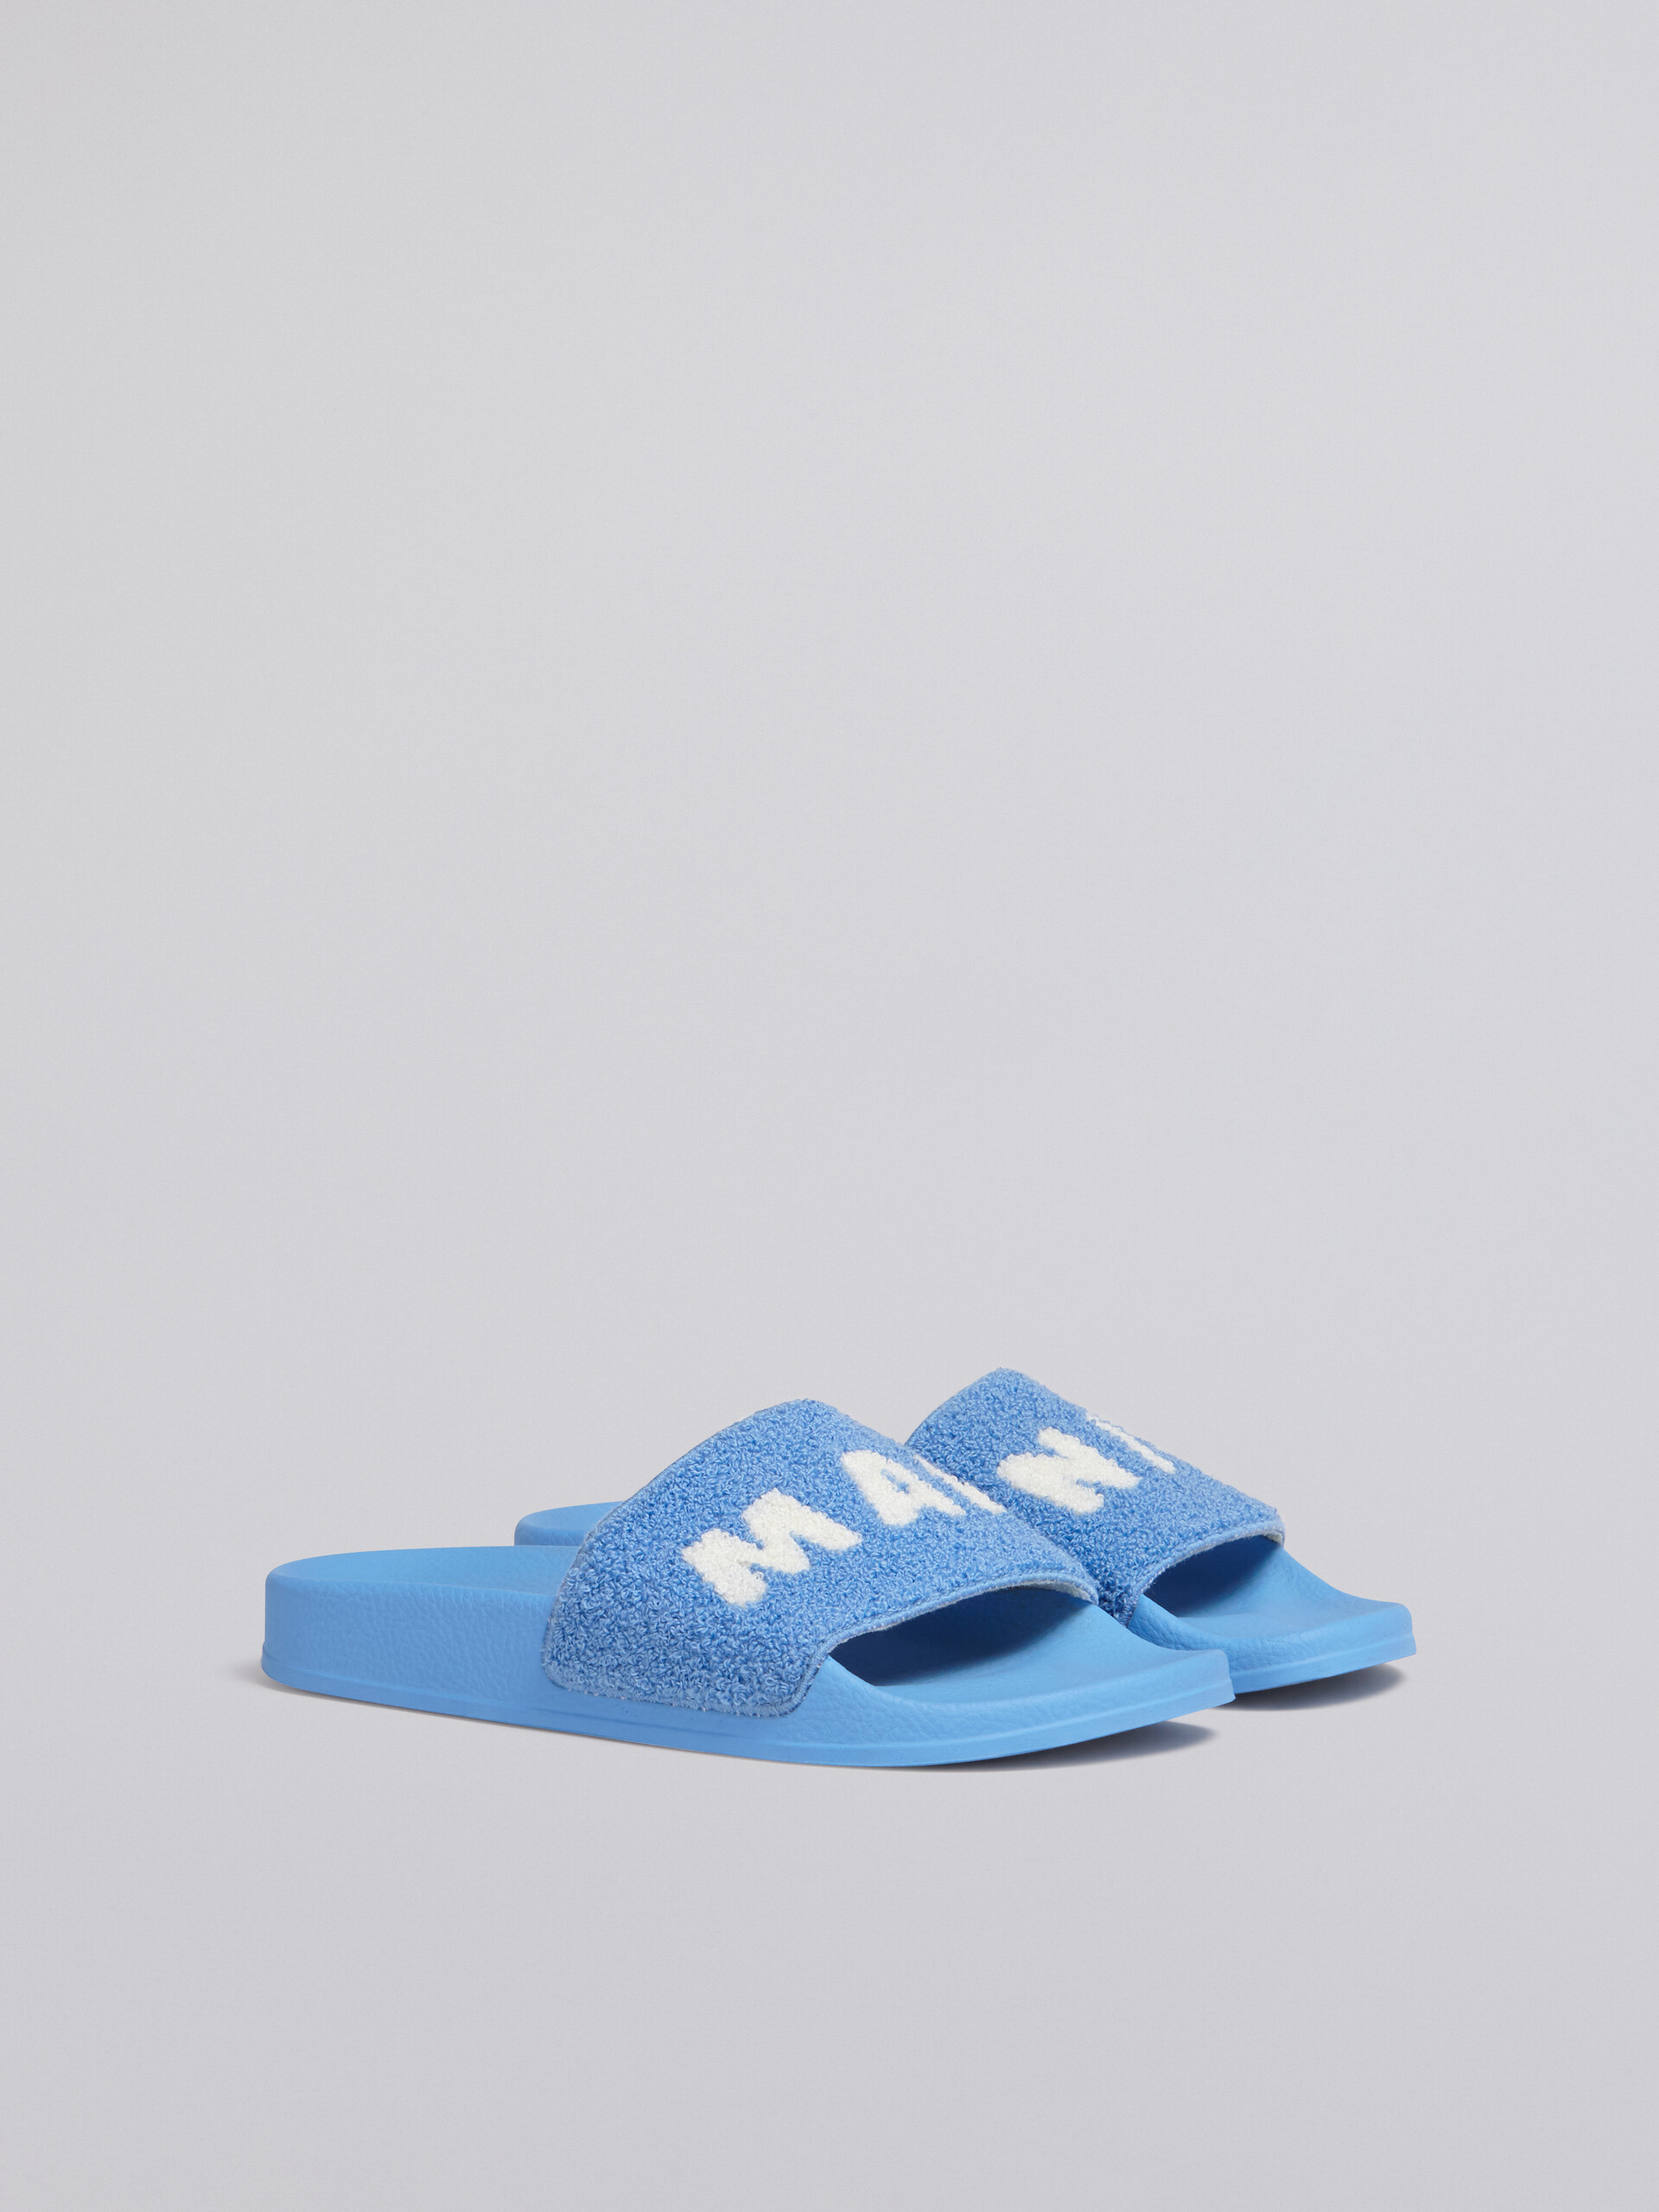 Gummisandale mit Schaft aus blauem und weißem Frotteeband - Sandalen - Image 2